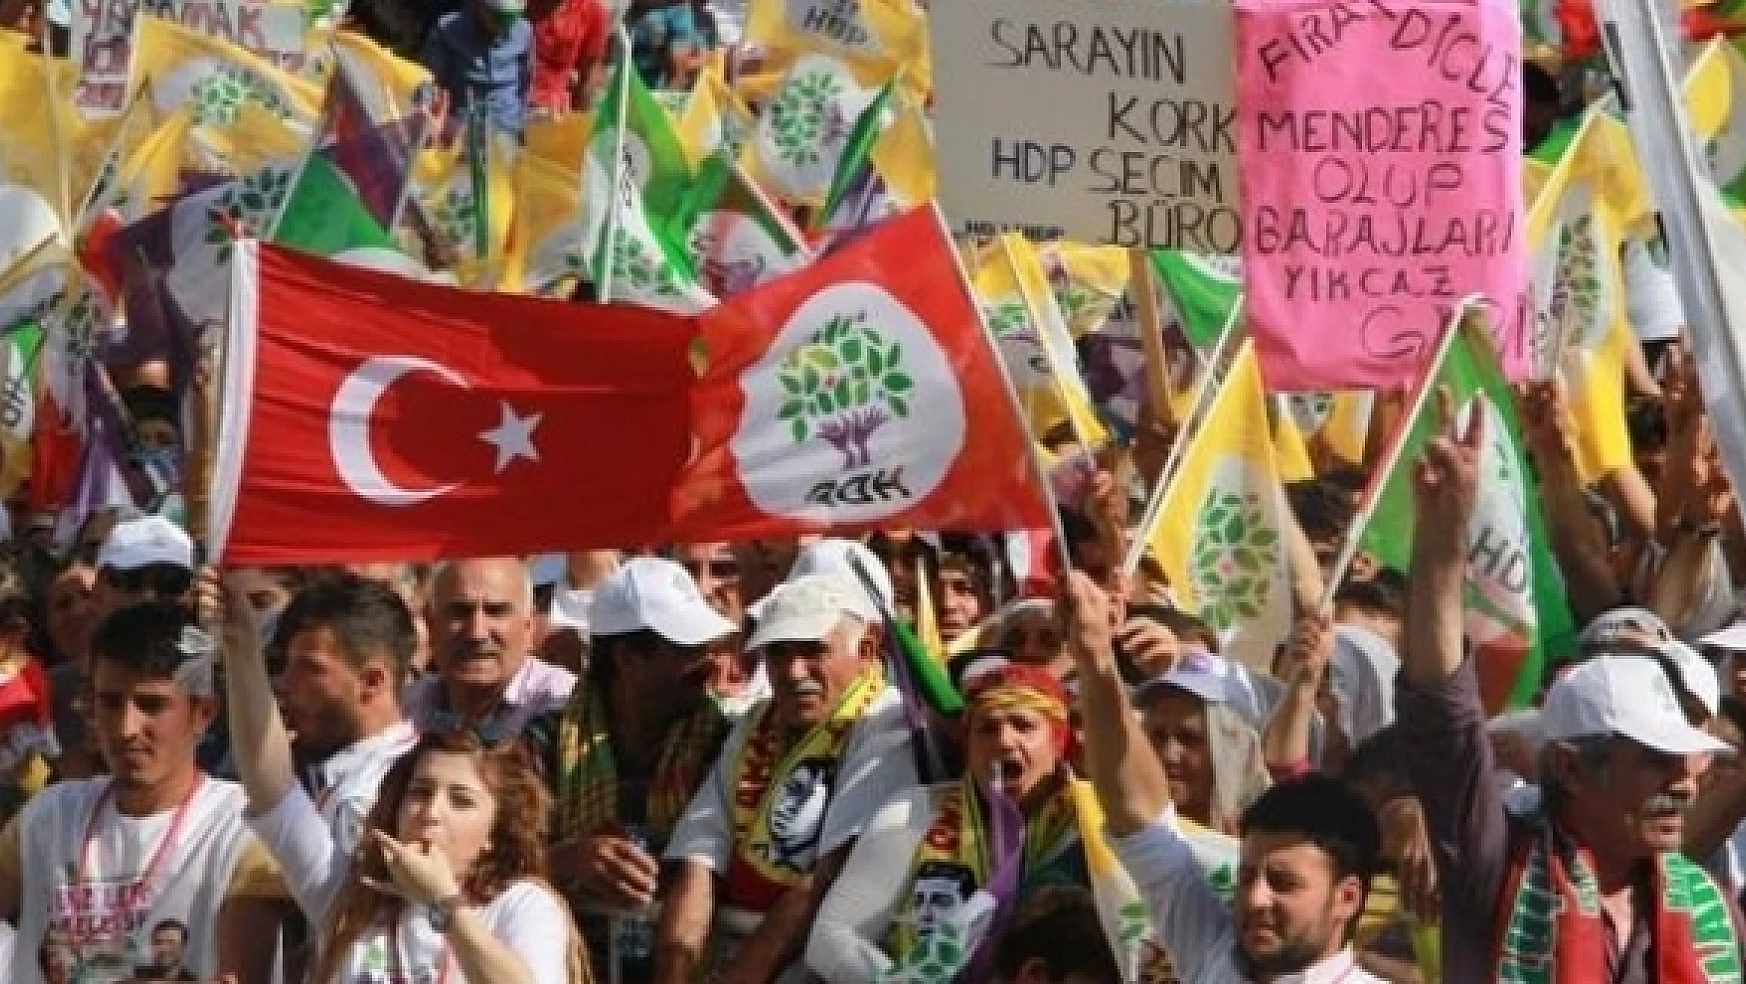 HDP:  O Bayrakta Kürt Kanıda Var